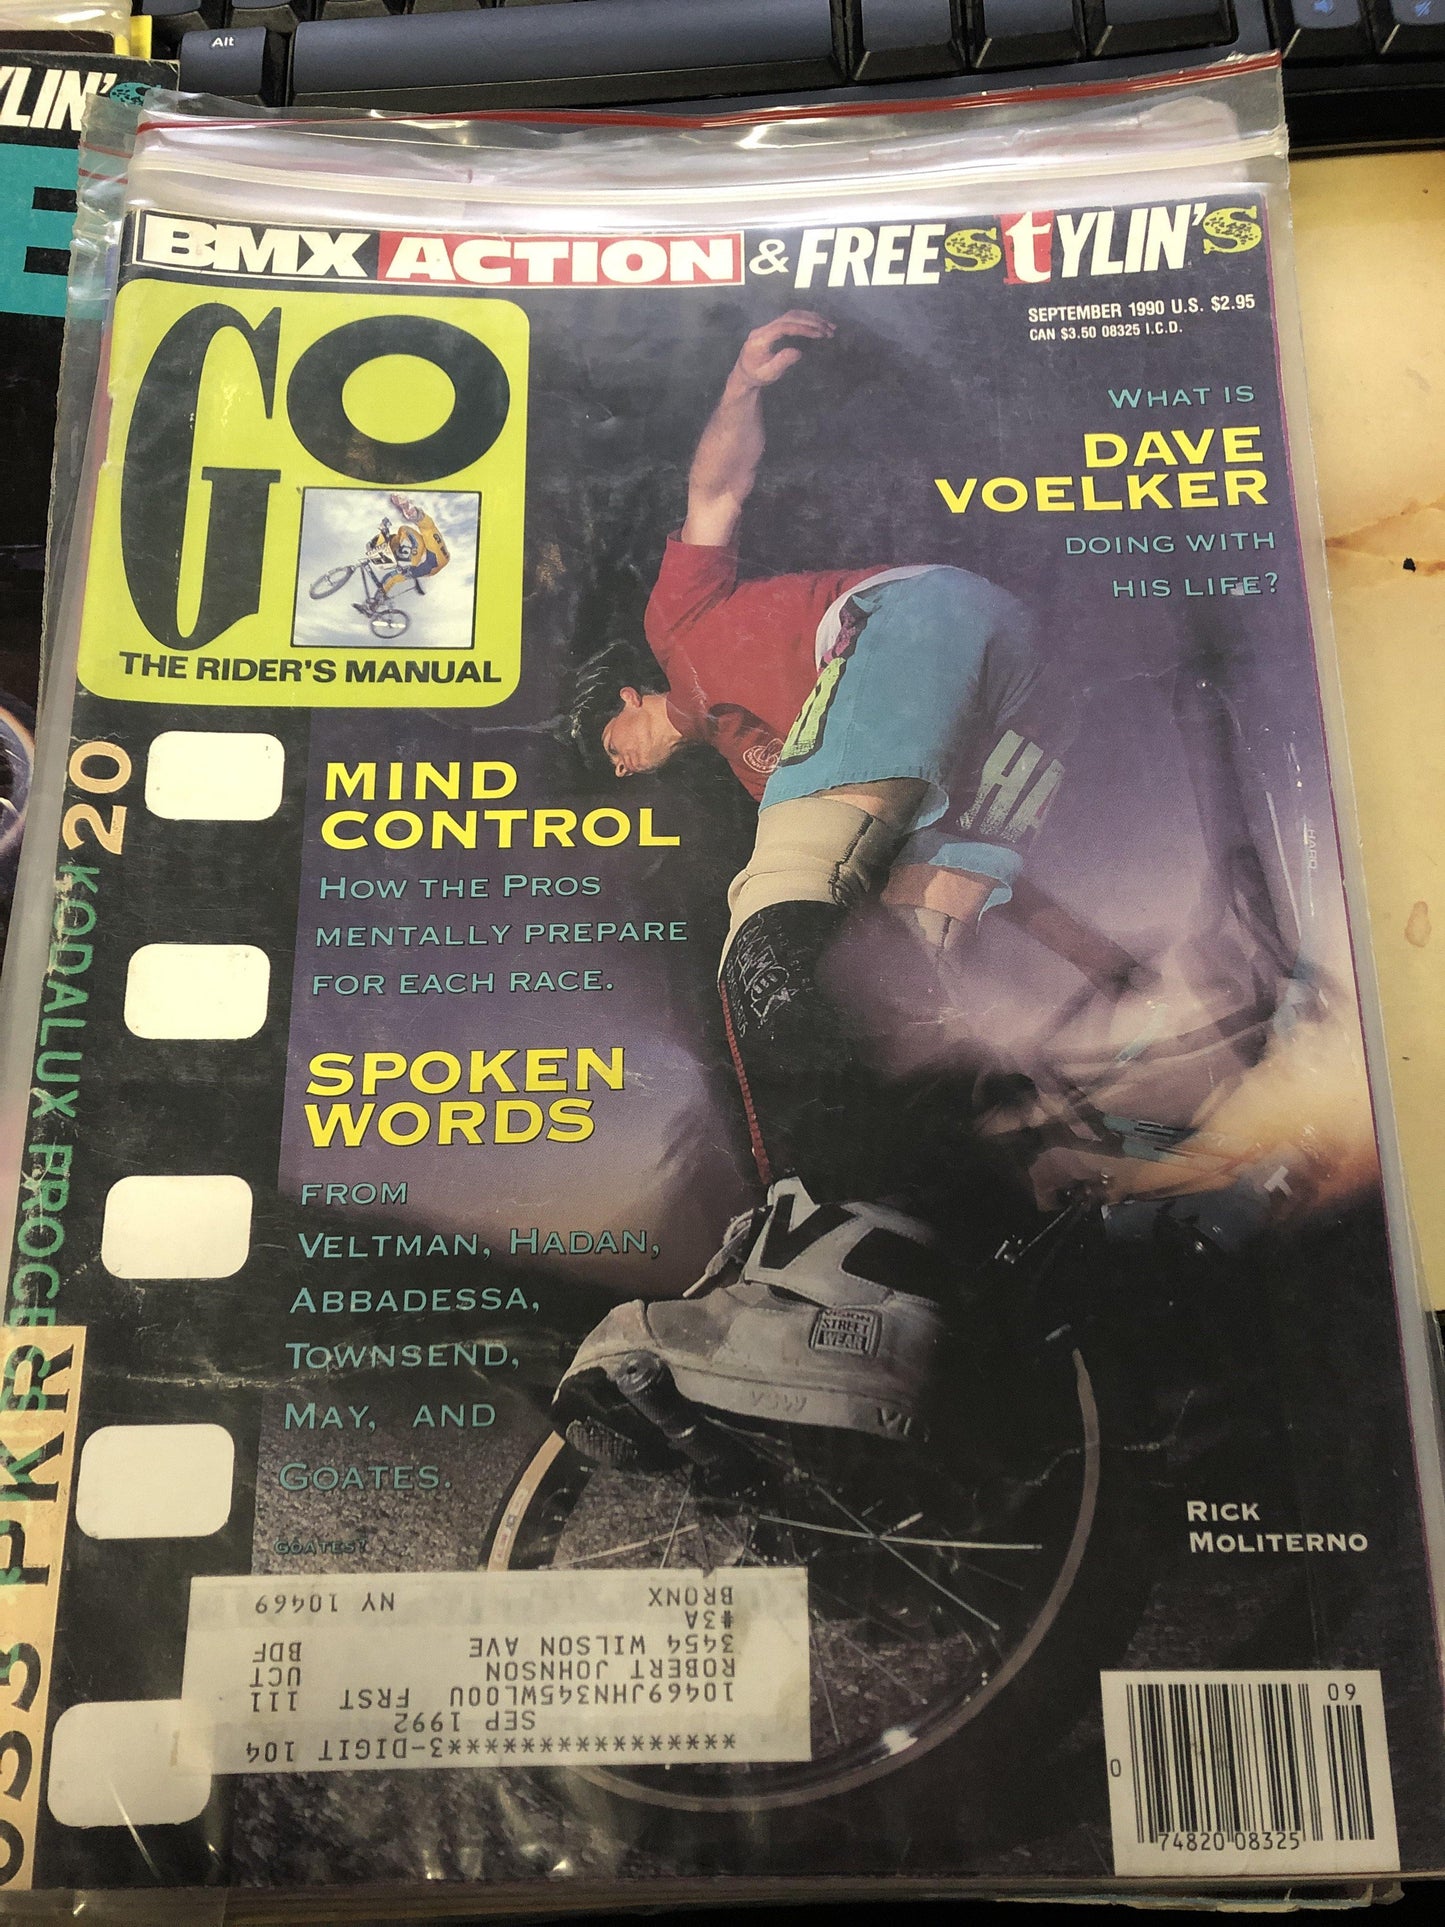 Go bmx magazine 1990 back issues - POWERS BMX